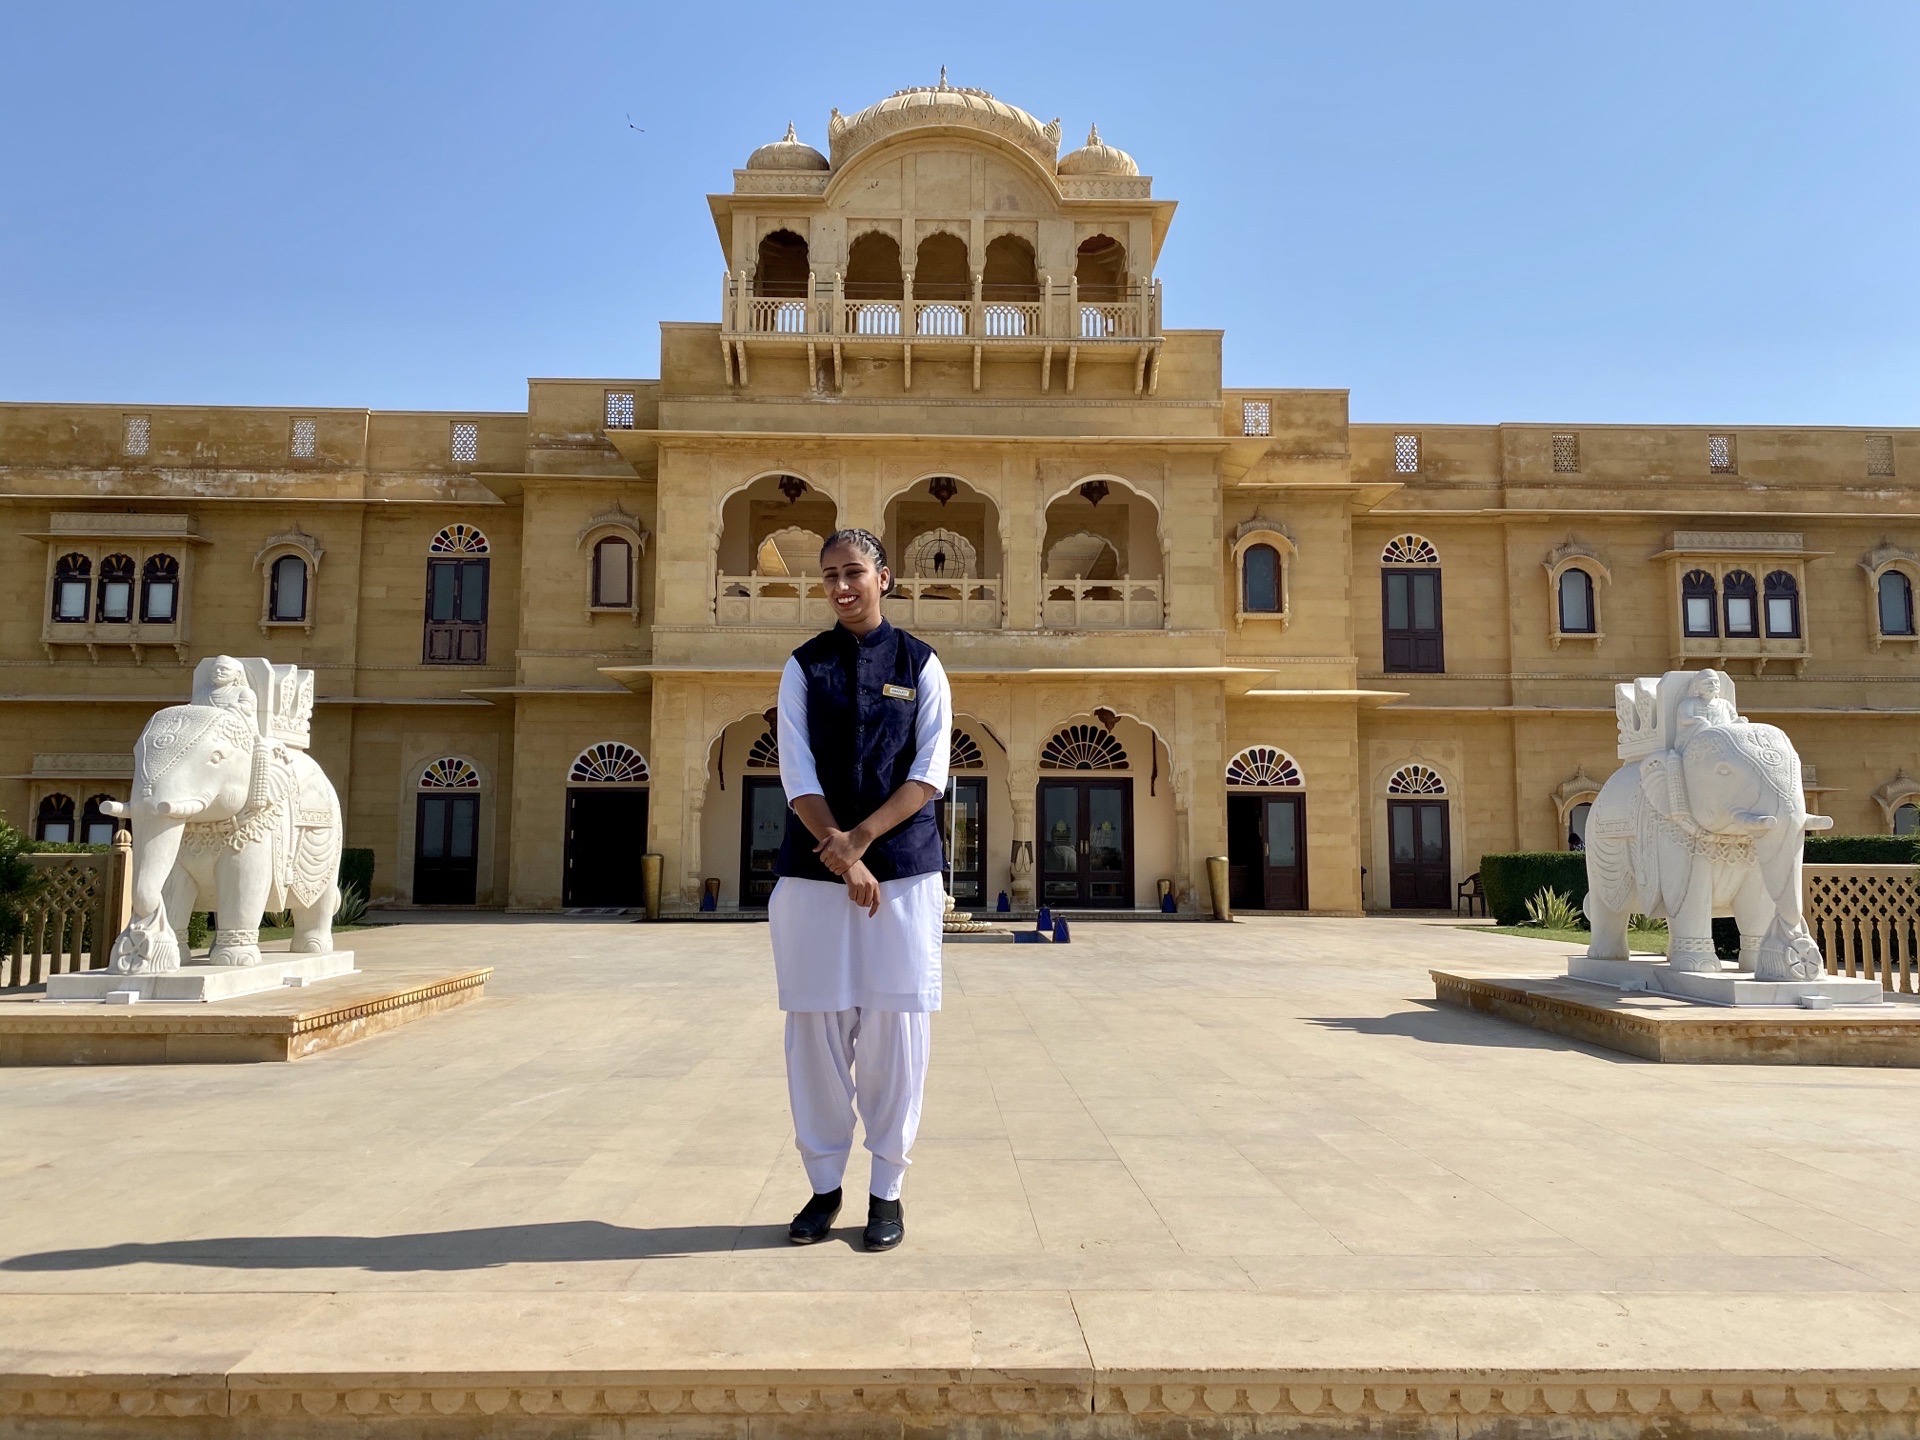 来到印度你一定要体验一次城堡型的酒店，因为印度北方多以人文历史景观为主，尤其是各个时期藩王留下的古堡